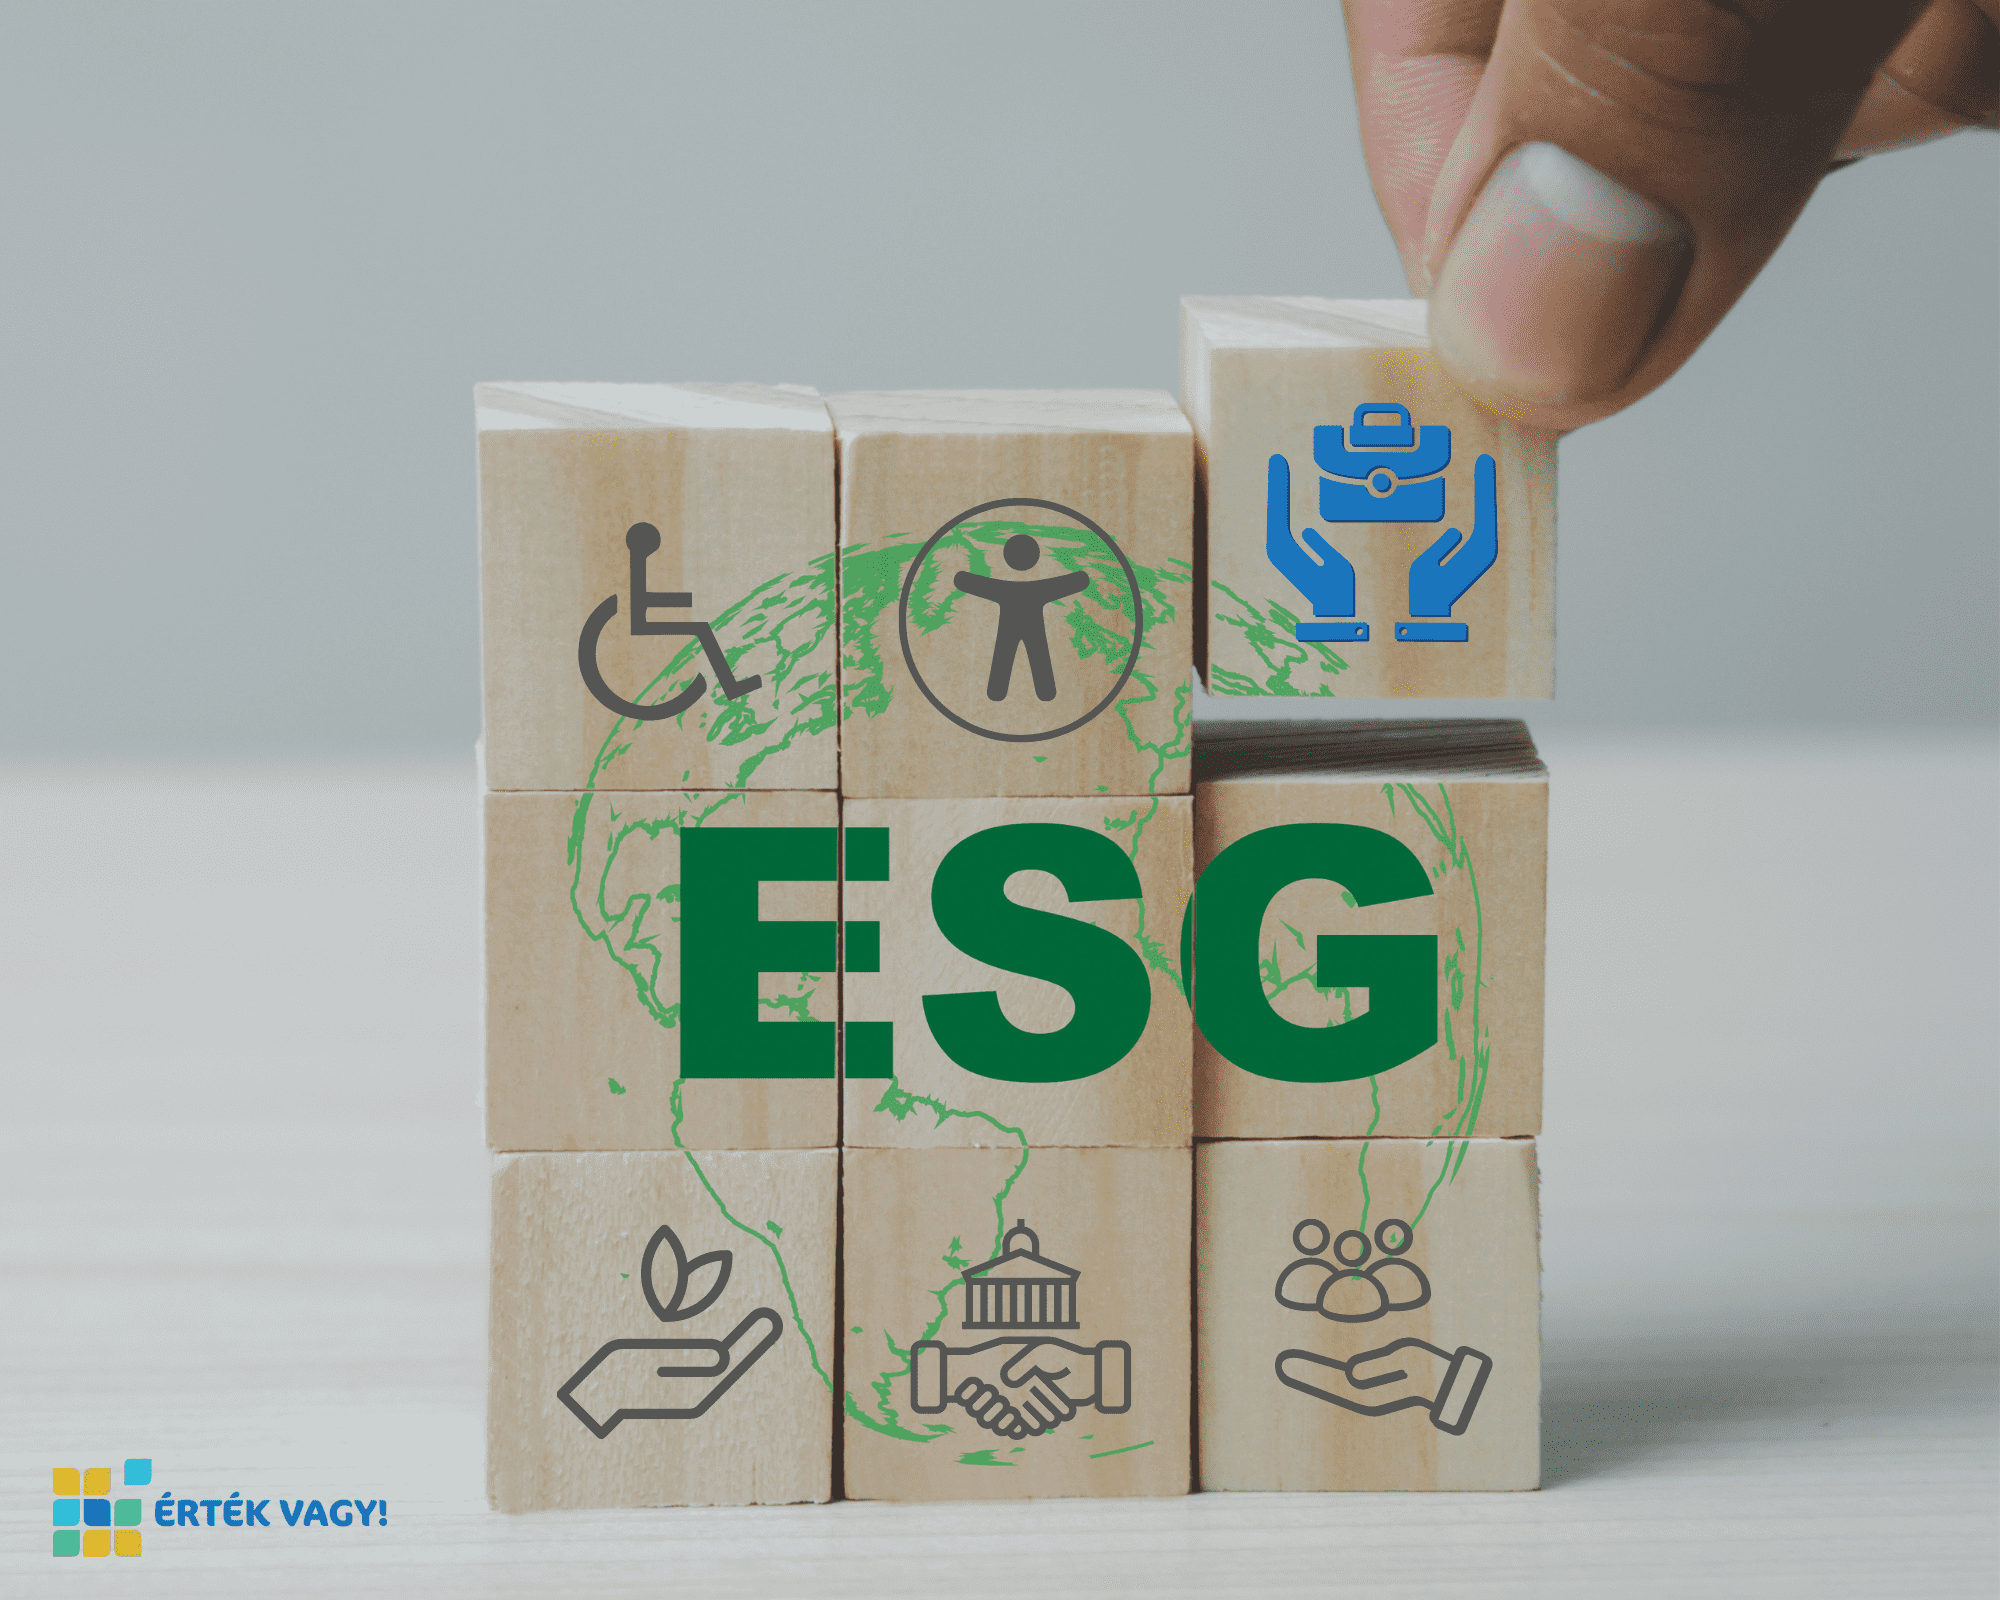 Háromszor három kiskockából álló nagyobb kocka, rajta az ESG felirattal és kisikonokkal